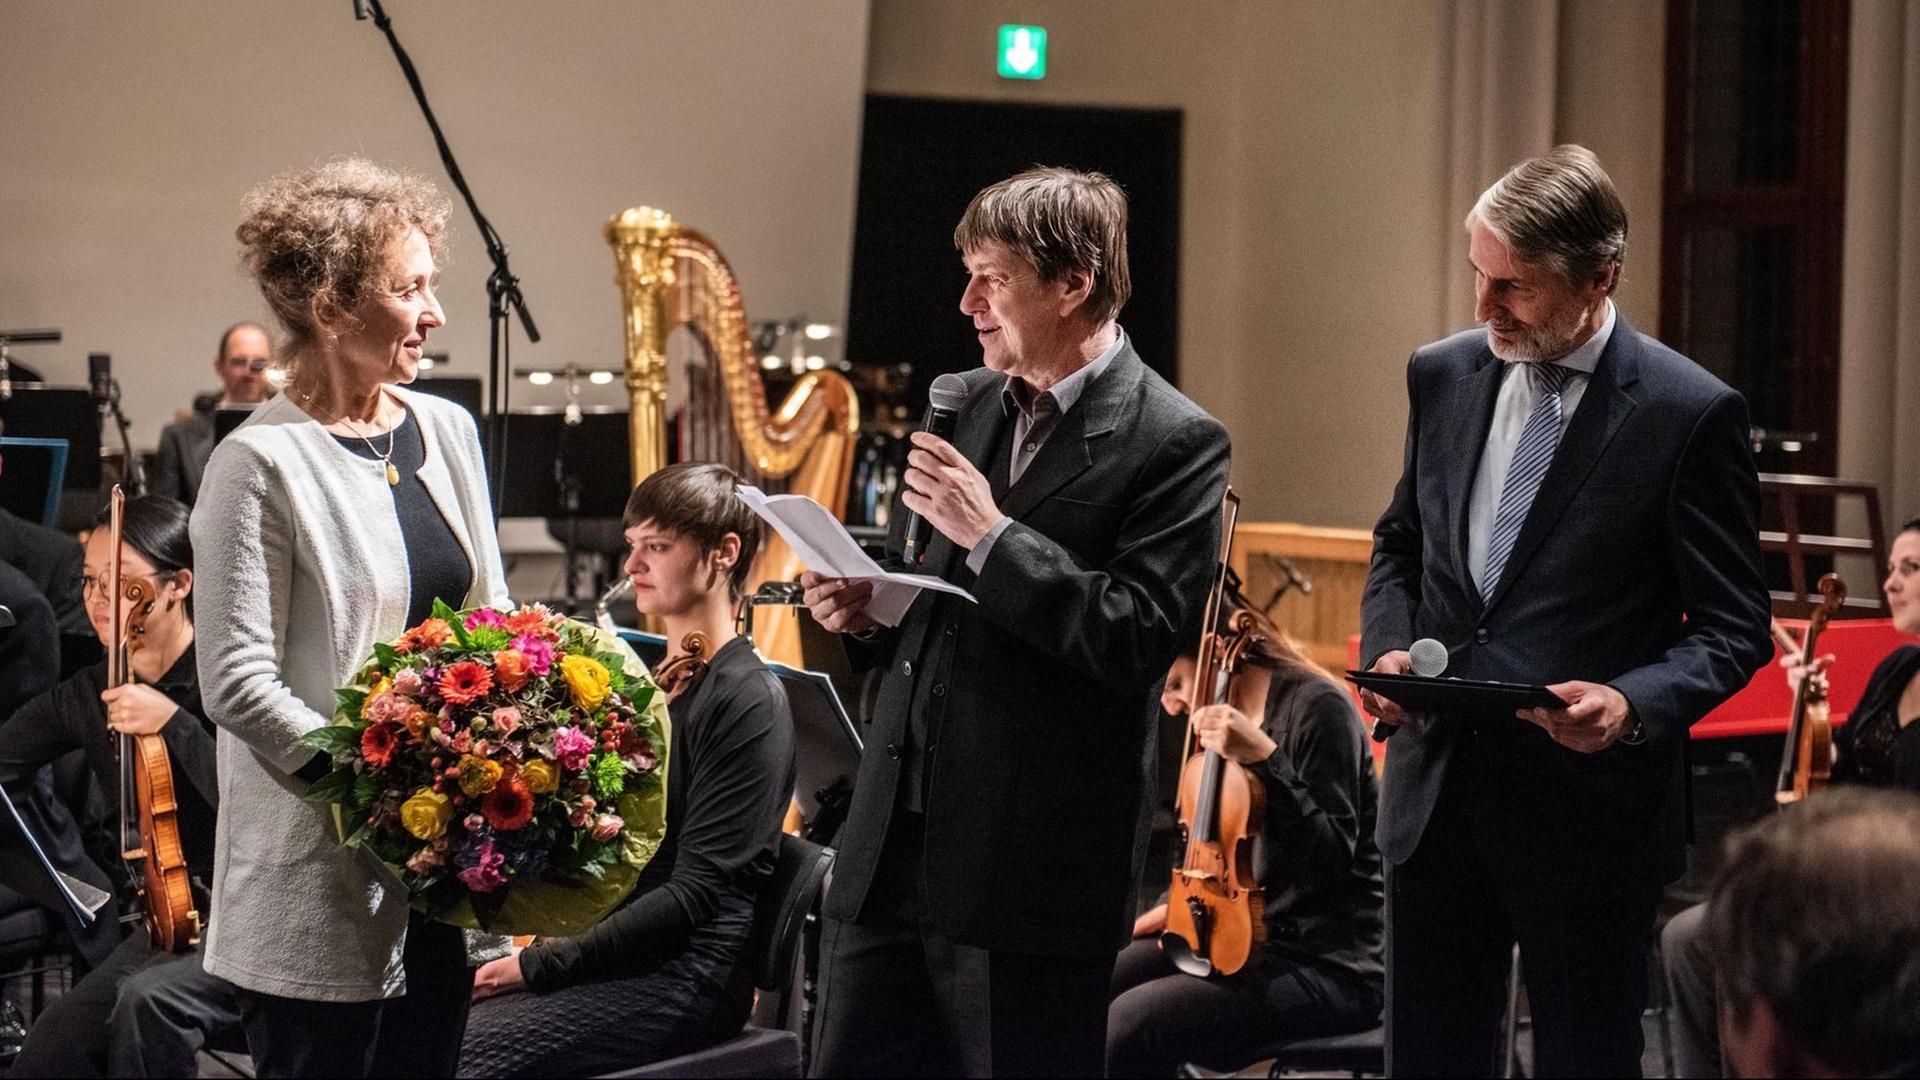 Links hält eine Frau einen Blumenstrauß in der Hand, rechts von ihr stehen zwei Herren im Anzug mit Mikrofon in der Hand, einer davon hält eine Ansprache. Im Hintergrund ist ein Orchester im Ausschnitt zu sehen.